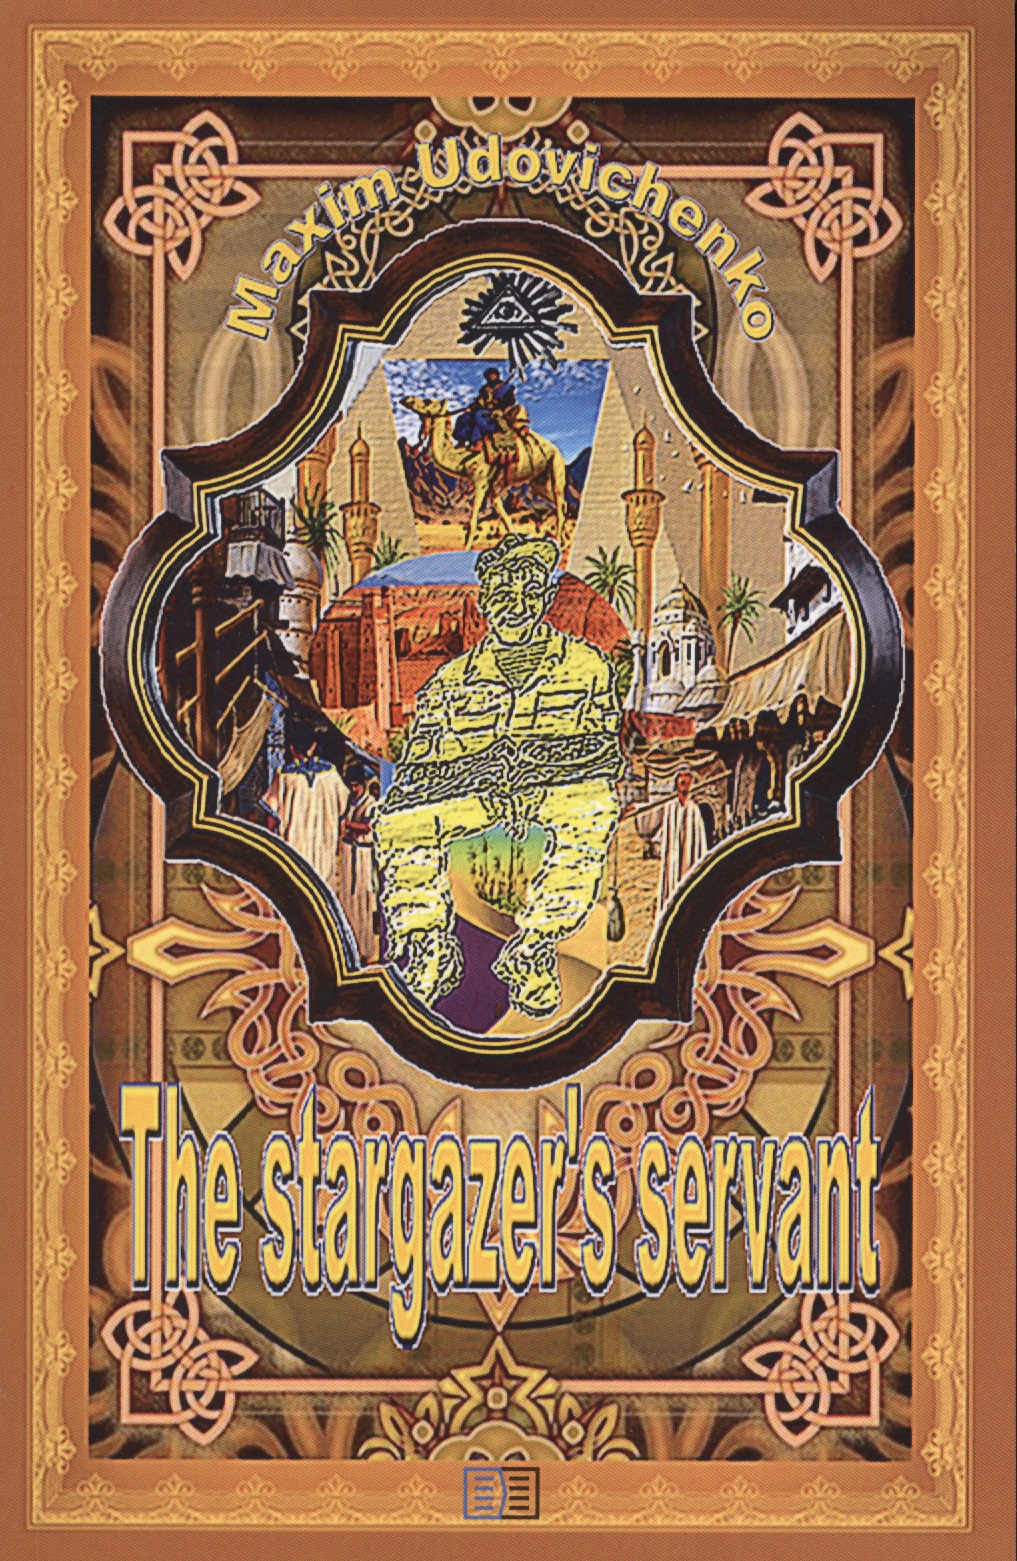 The stargazer’s servant